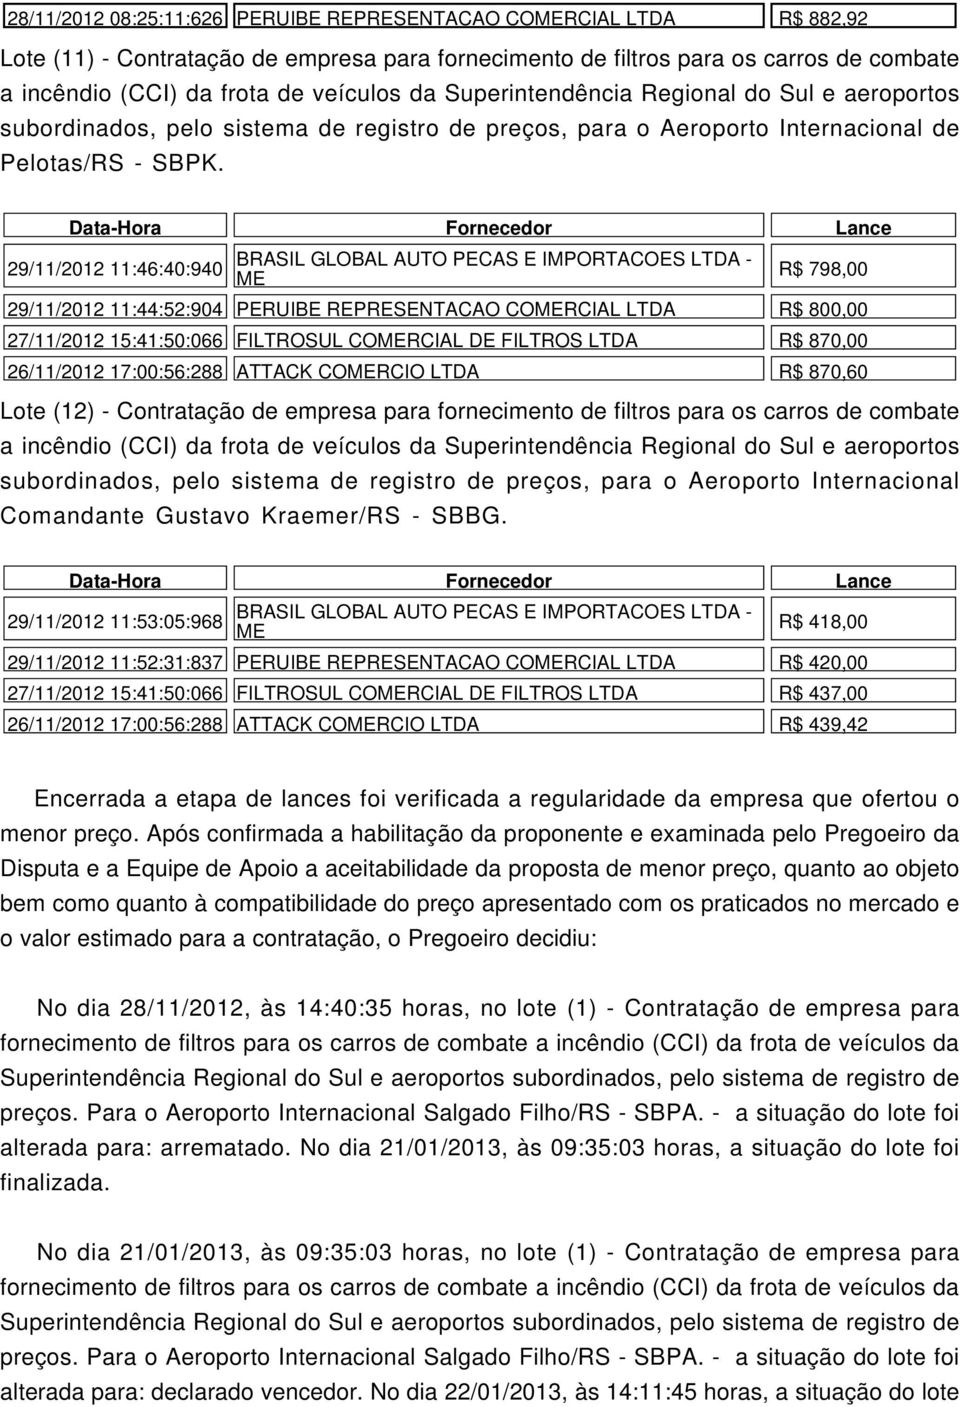 29/11/2012 11:46:40:940 Lote (12) - Contratação de empresa para fornecimento de filtros para os carros de combate a subordinados, pelo sistema de registro de preços, para o Aeroporto Internacional